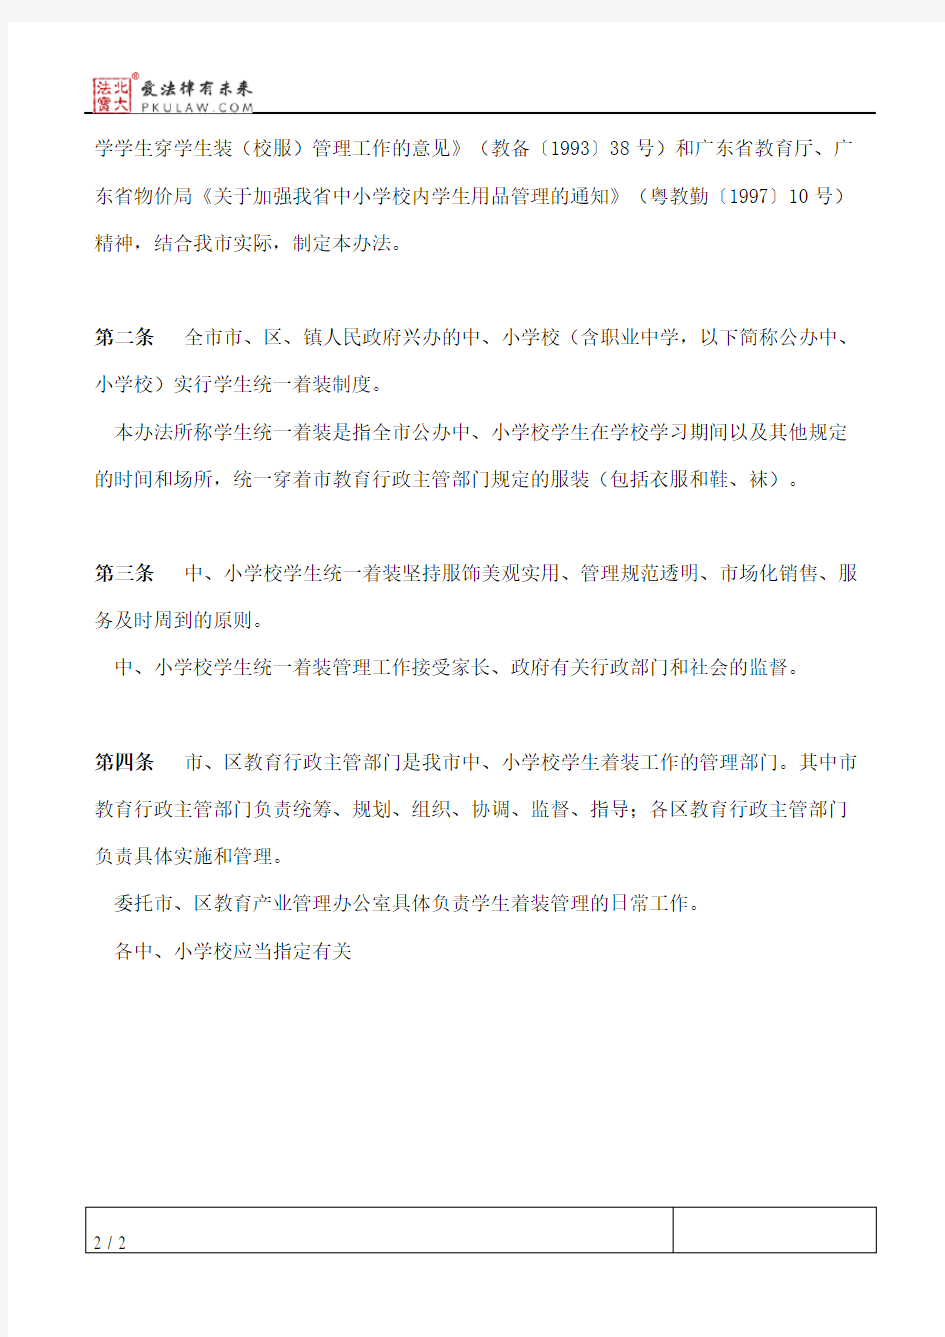 深圳市教育局关于印发《深圳市中小学校学生统一着装管理办法》的通知